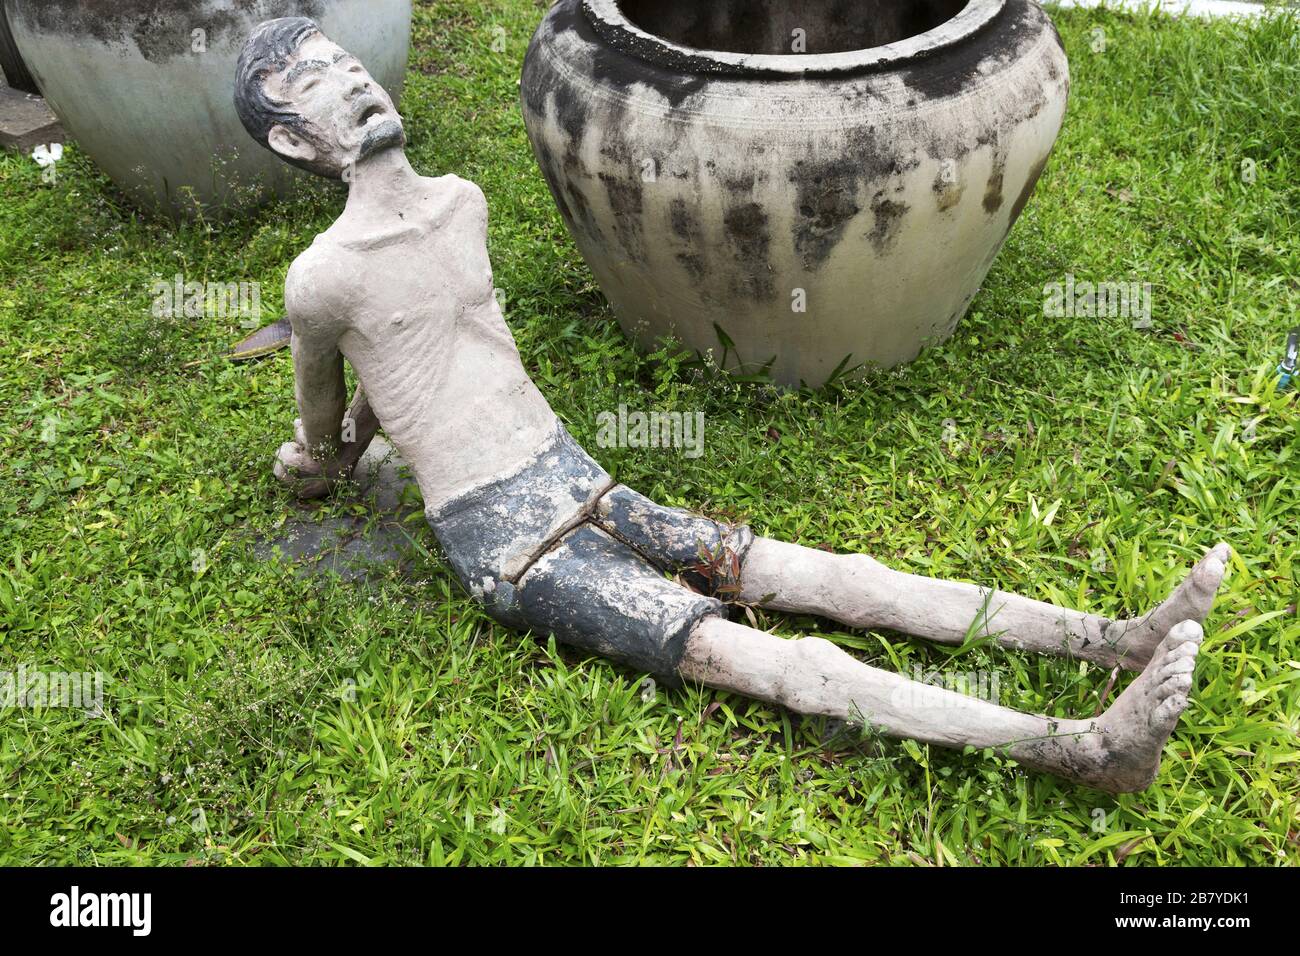 Figur des auf Grass liegenden gefolterten Gefangenen im Tuol Sleng war Crimes Genocide Museum, Phnom Penh Kambodscha Stockfoto